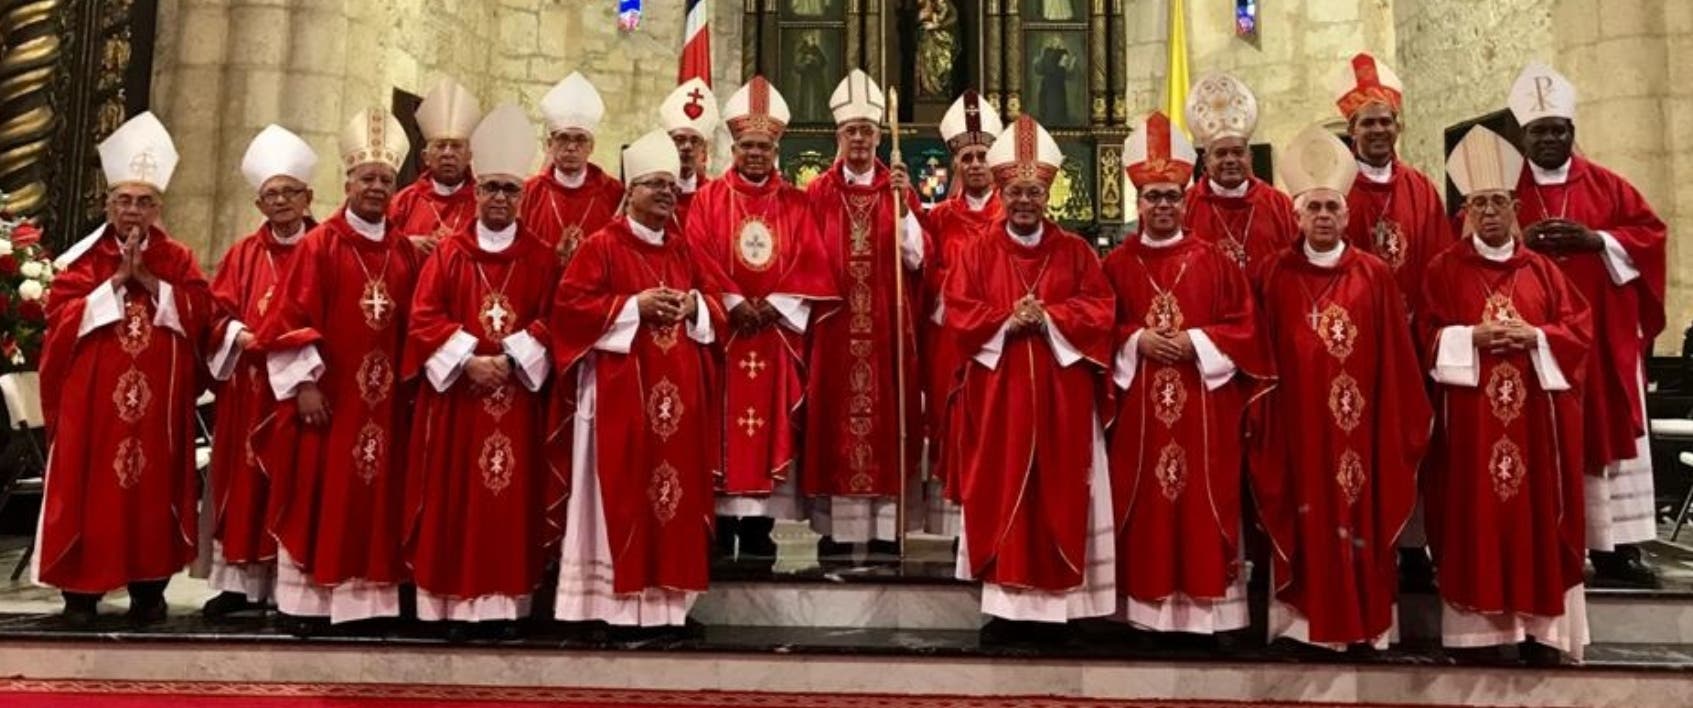 Obispos instan a votar con madurez y acatar resultados de las elecciones